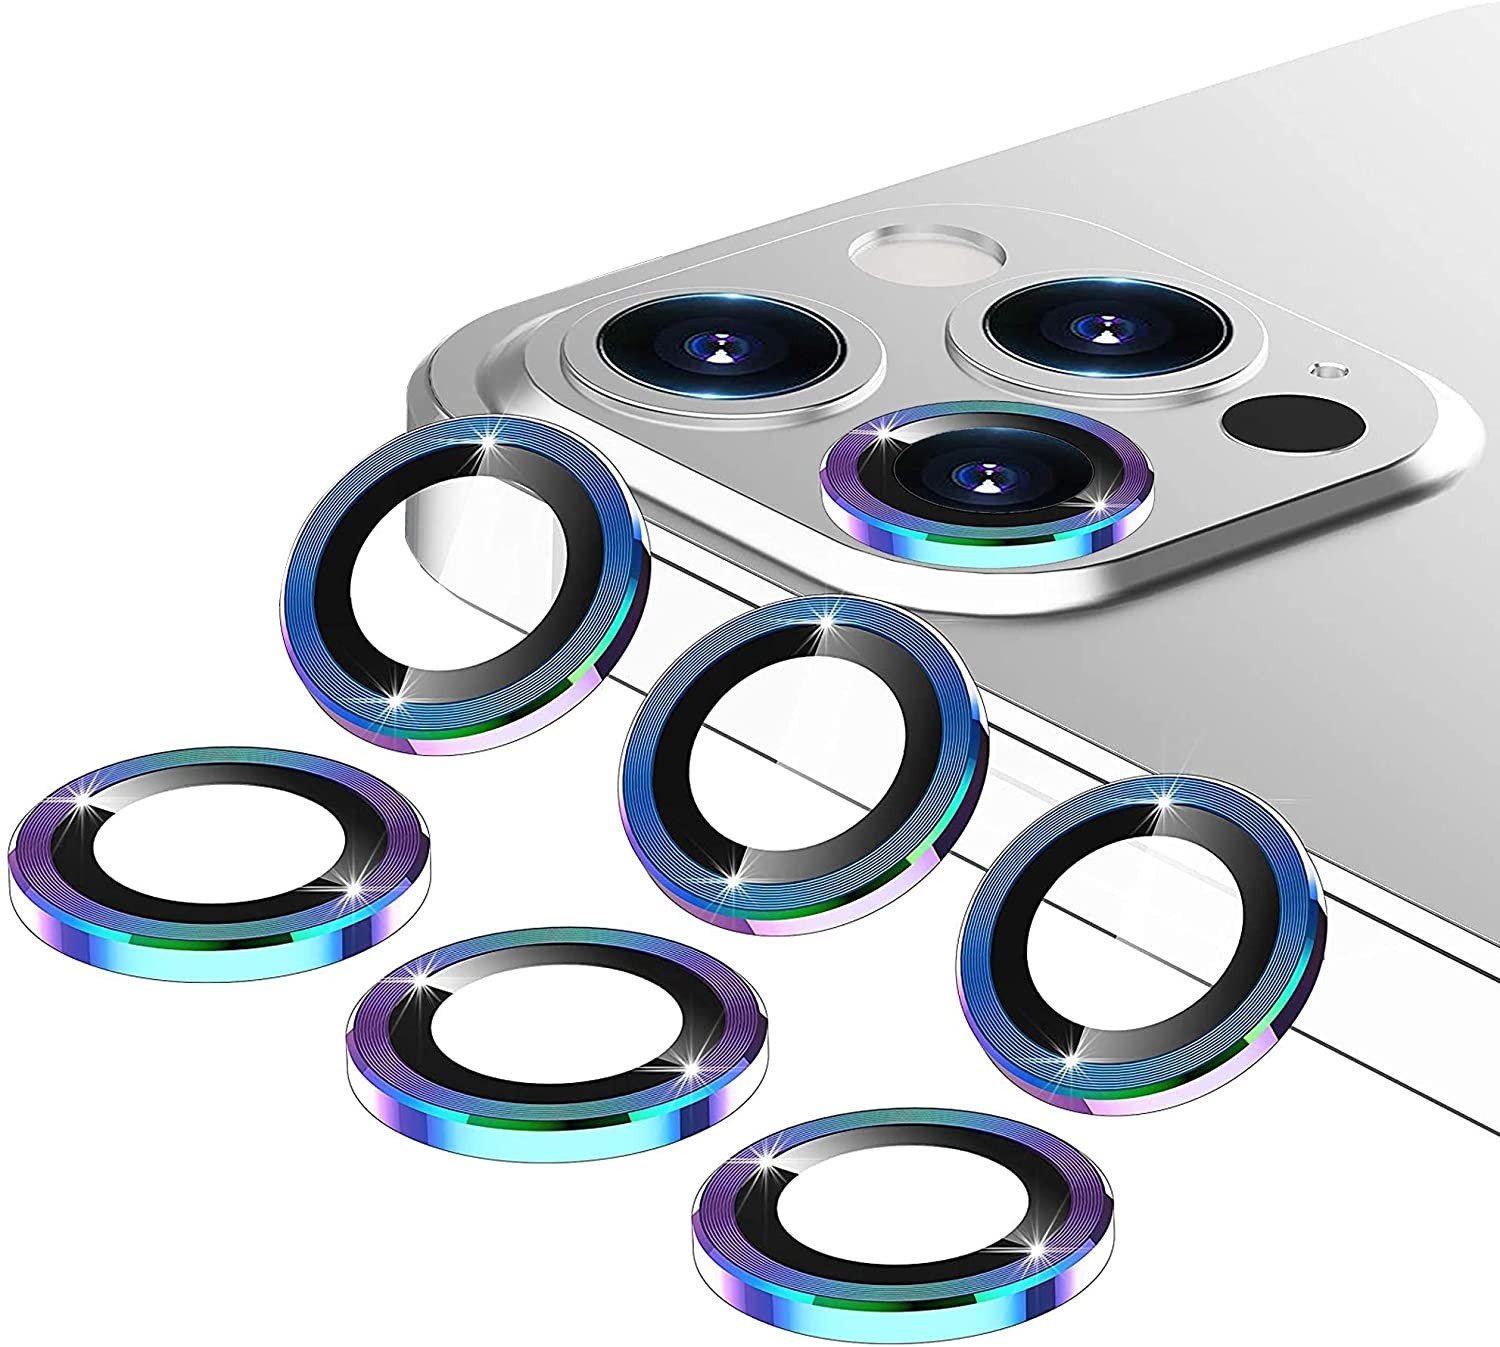 Best iPhone 12 Pro Max camera lens protectors